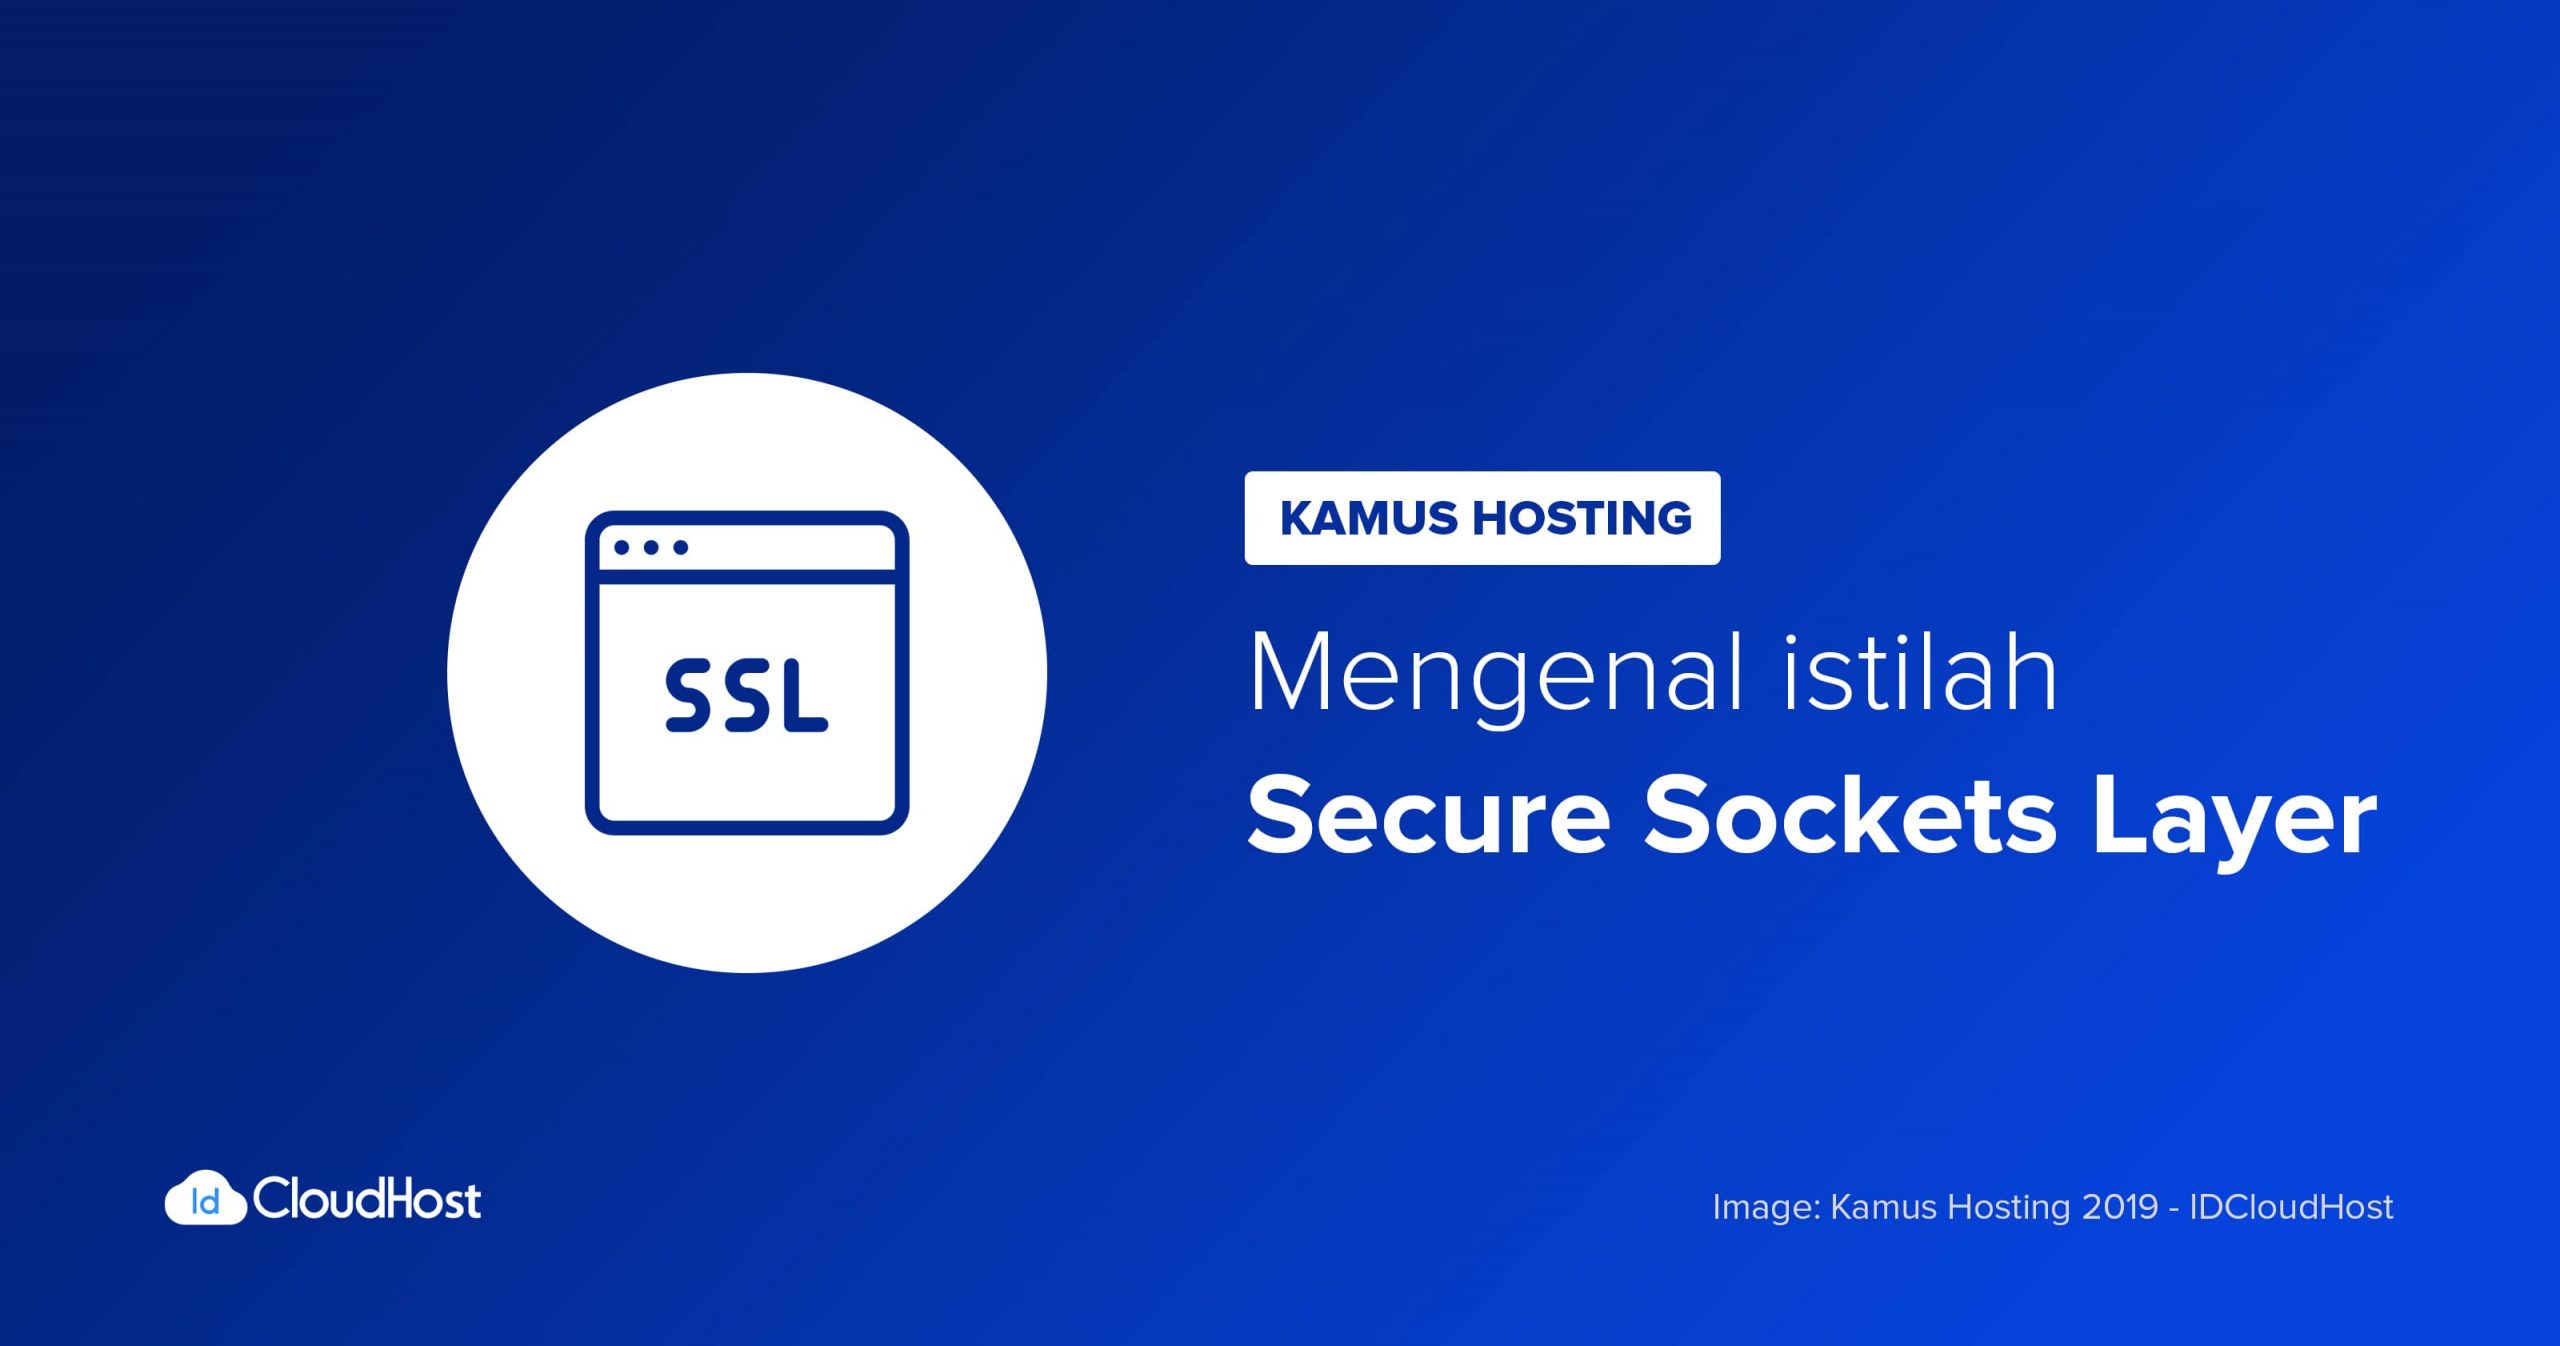 Lớp cổng bảo mật (SSL)